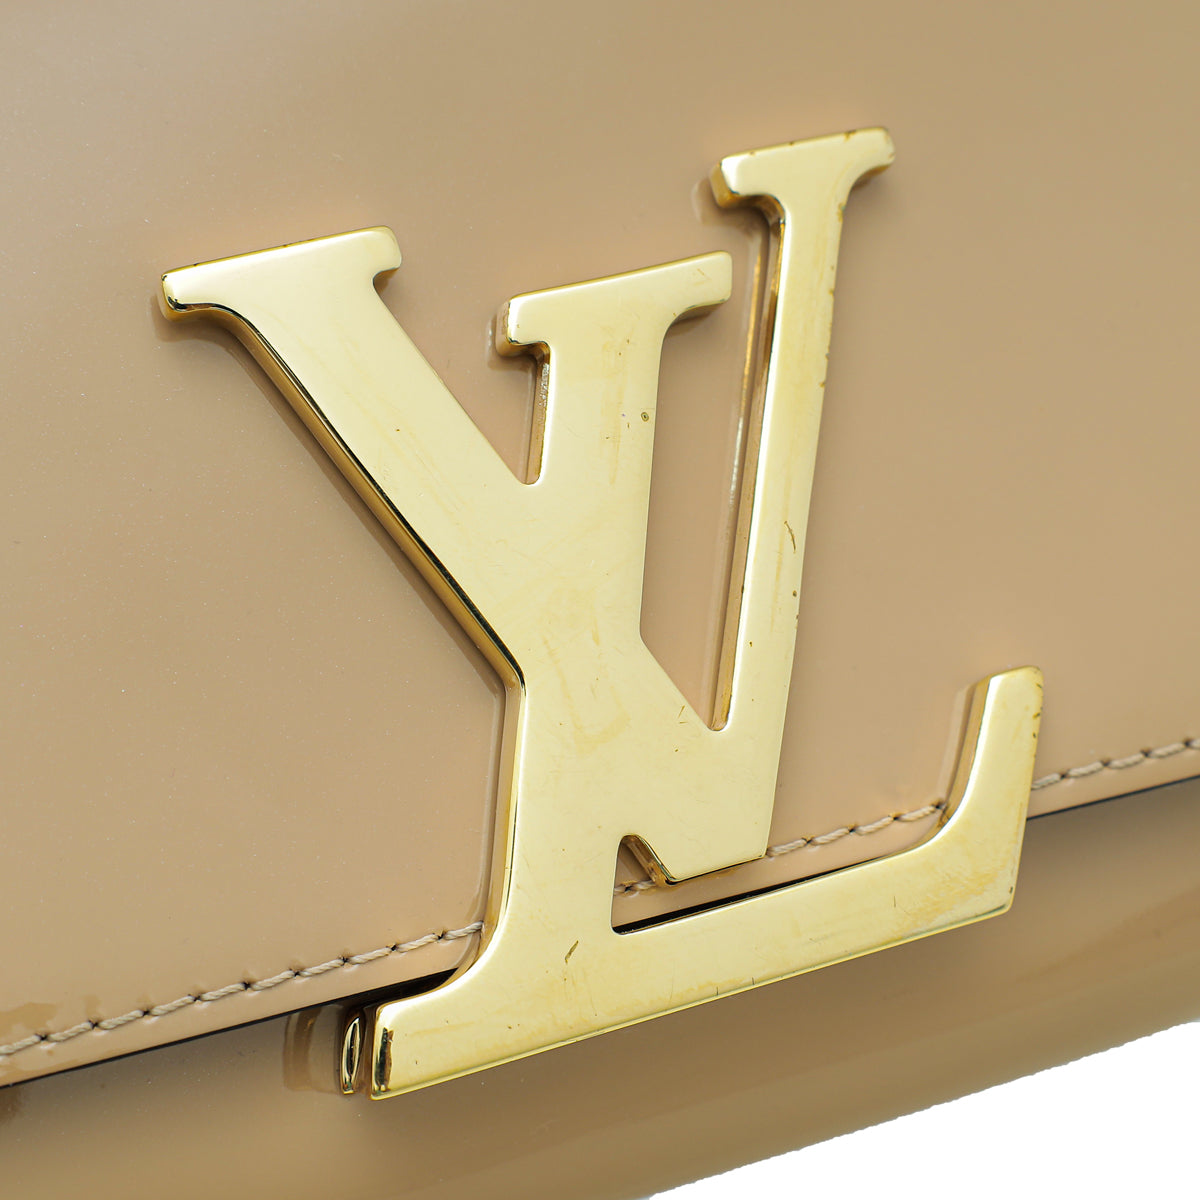 حقيبة كلاتش من Louis Vuitton Rouge Fauviste Vernis Sobe – The Closet